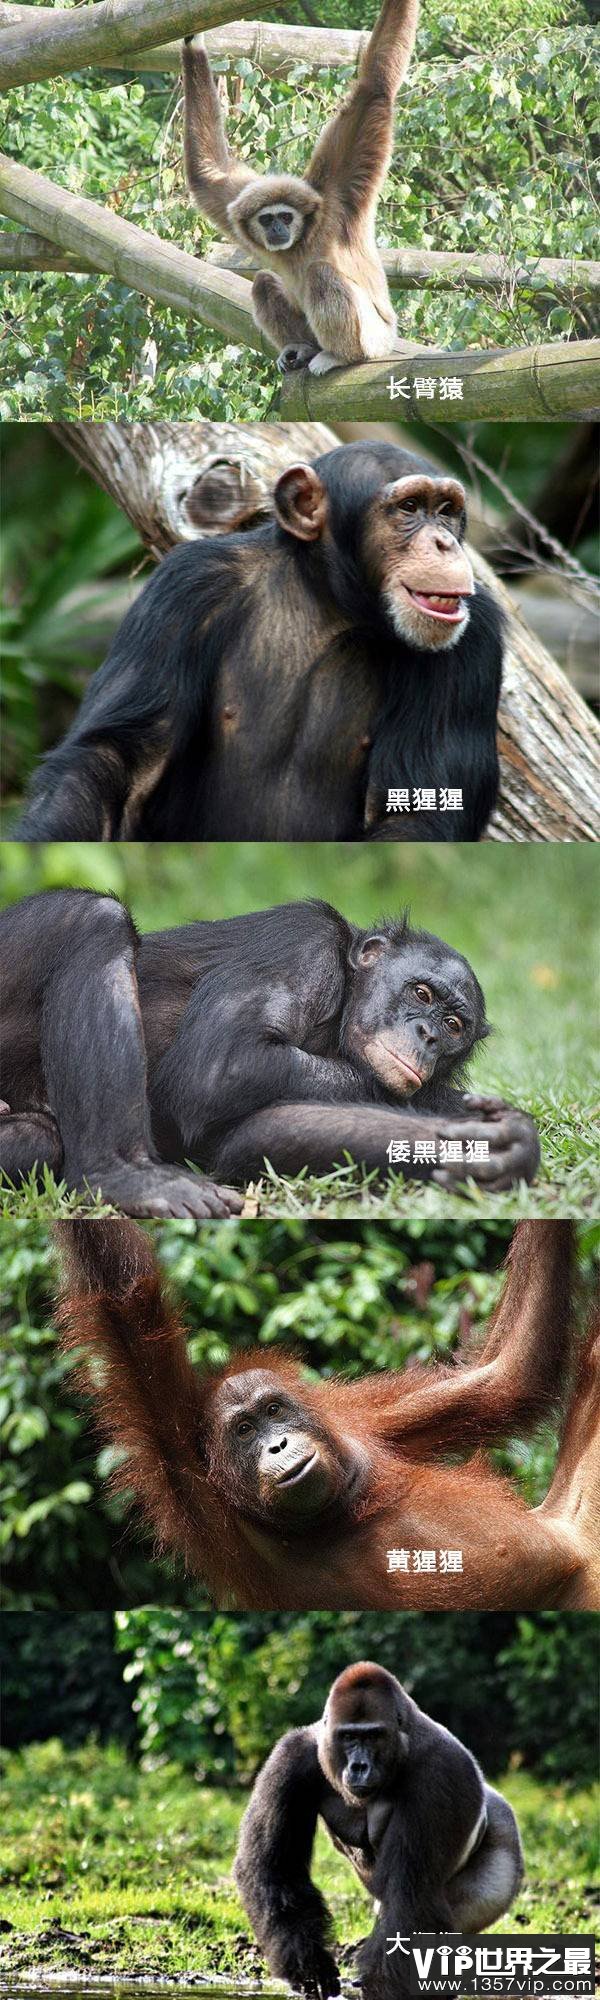 猴子和猿的区别是什么 如何区分猴子和猿